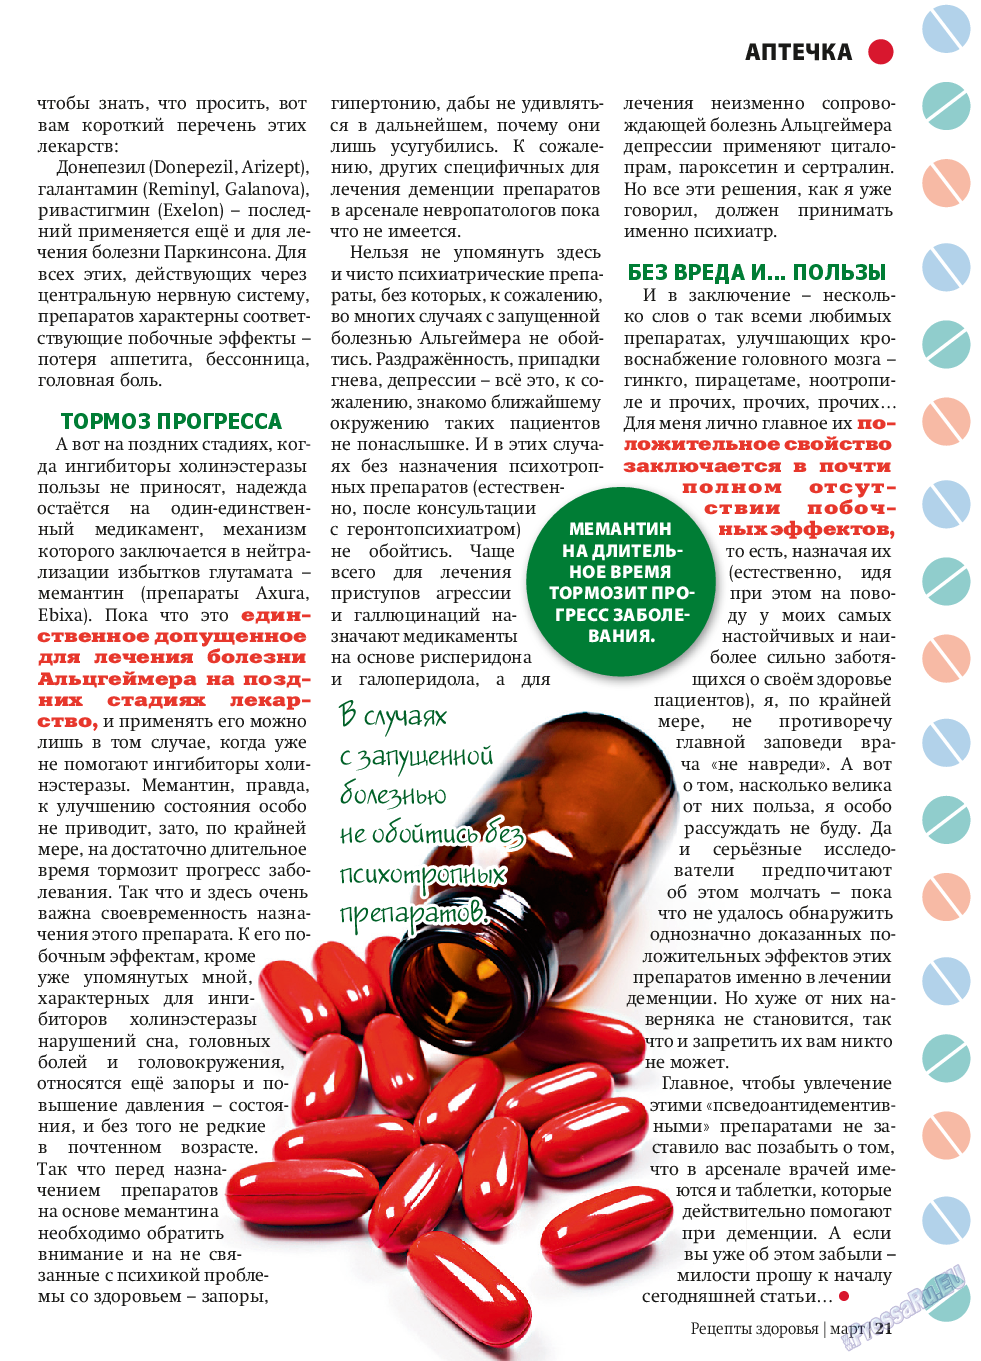 Рецепты здоровья, журнал. 2014 №58 стр.21